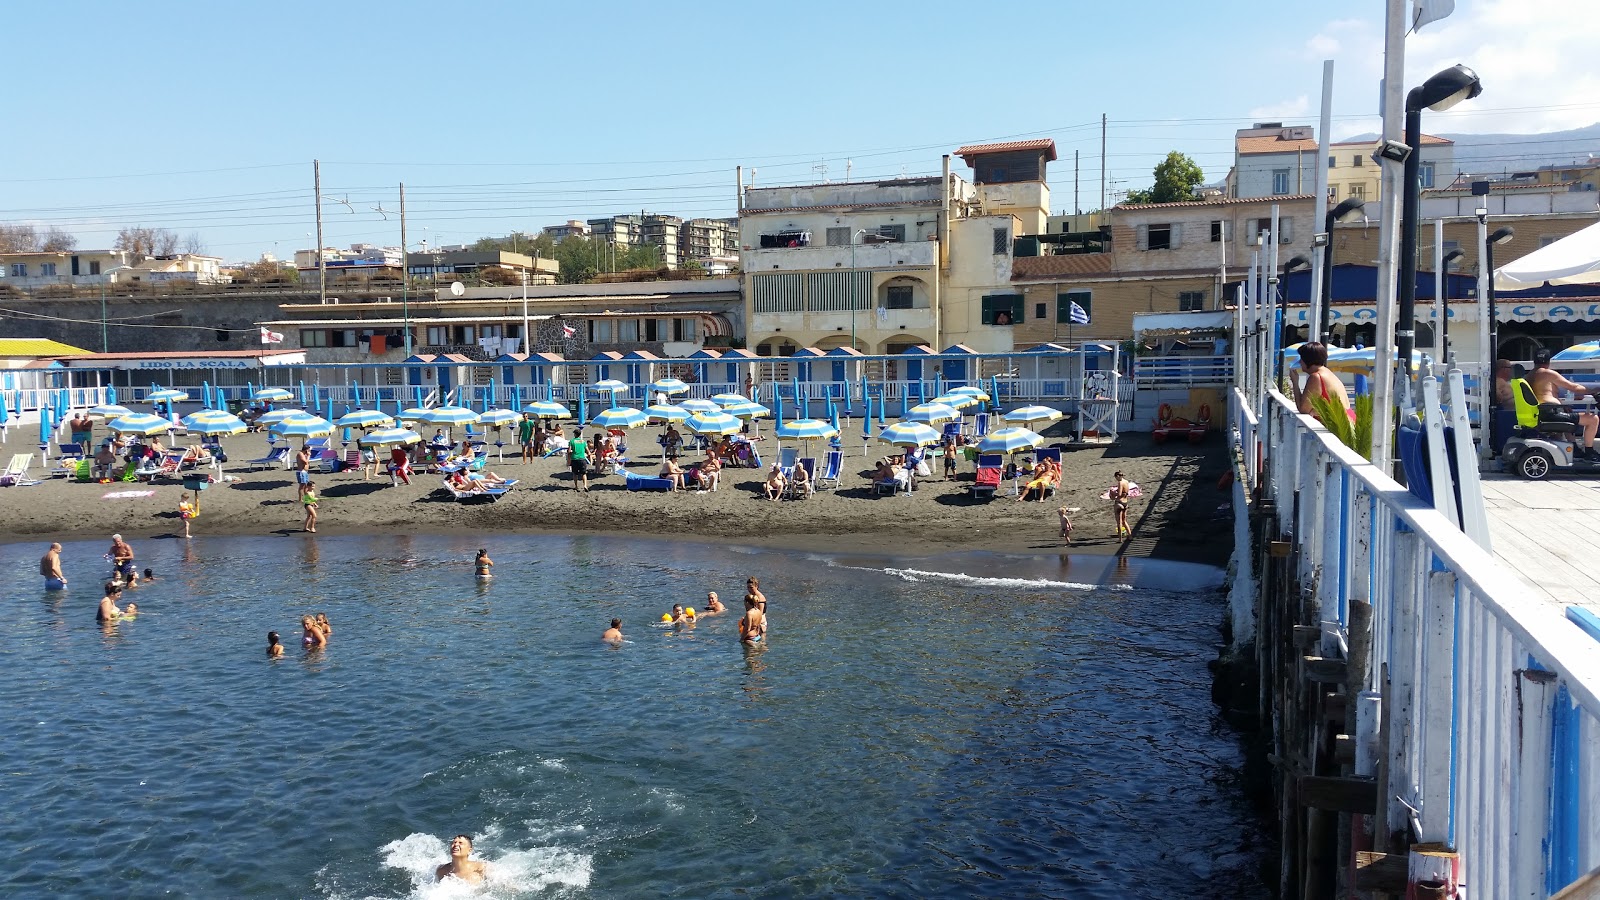 Spiaggia di via Calastro的照片 具有部分干净级别的清洁度